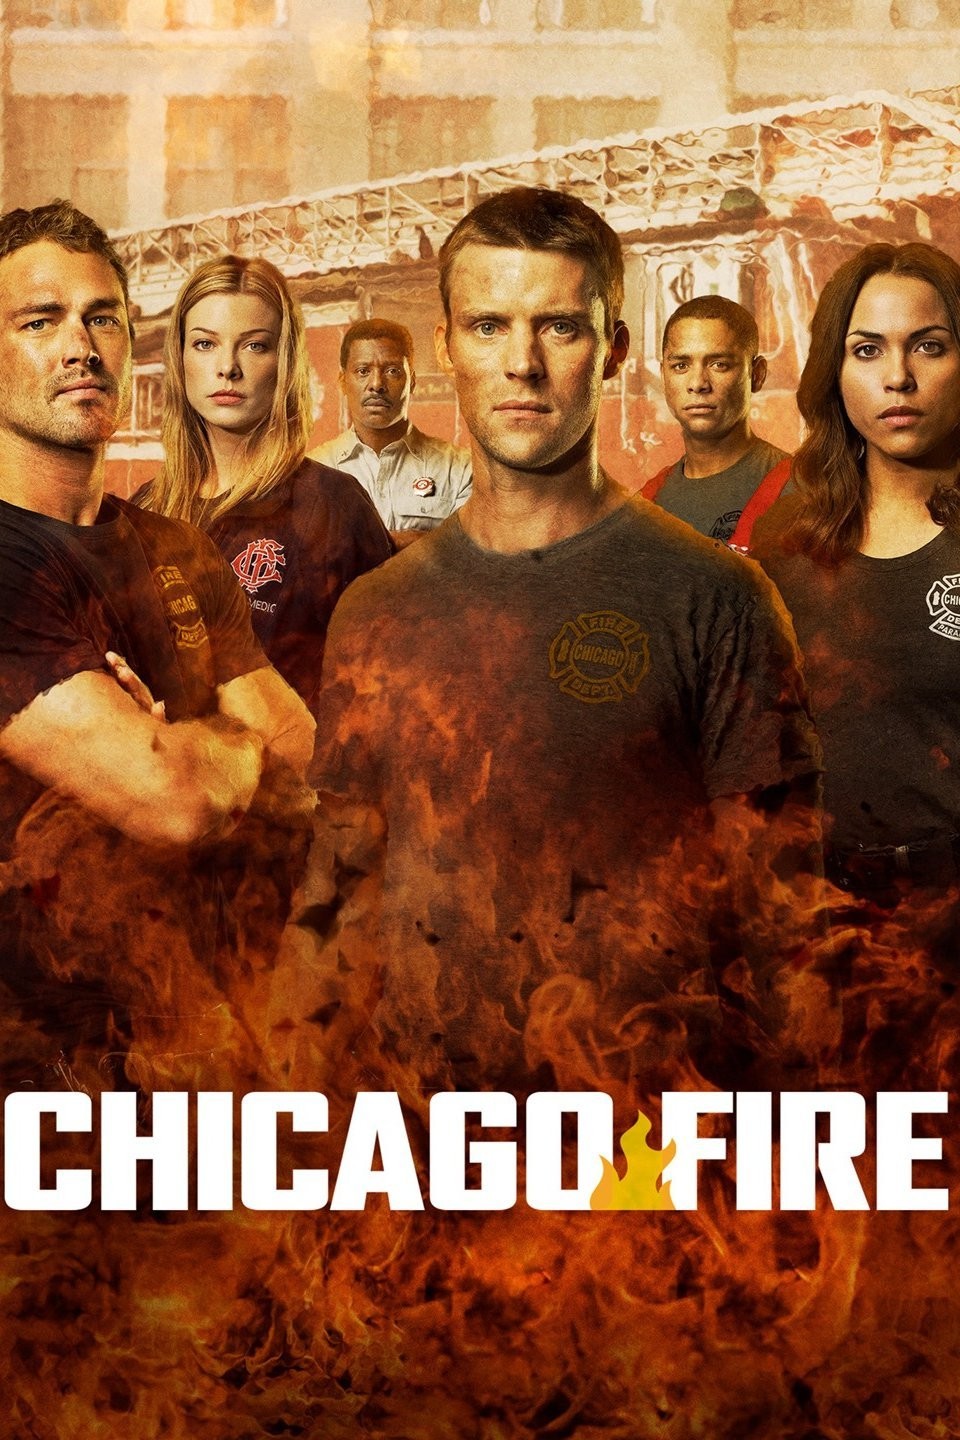  Chicago Fire: Season 11 DVD : Michael Brandt, Derek